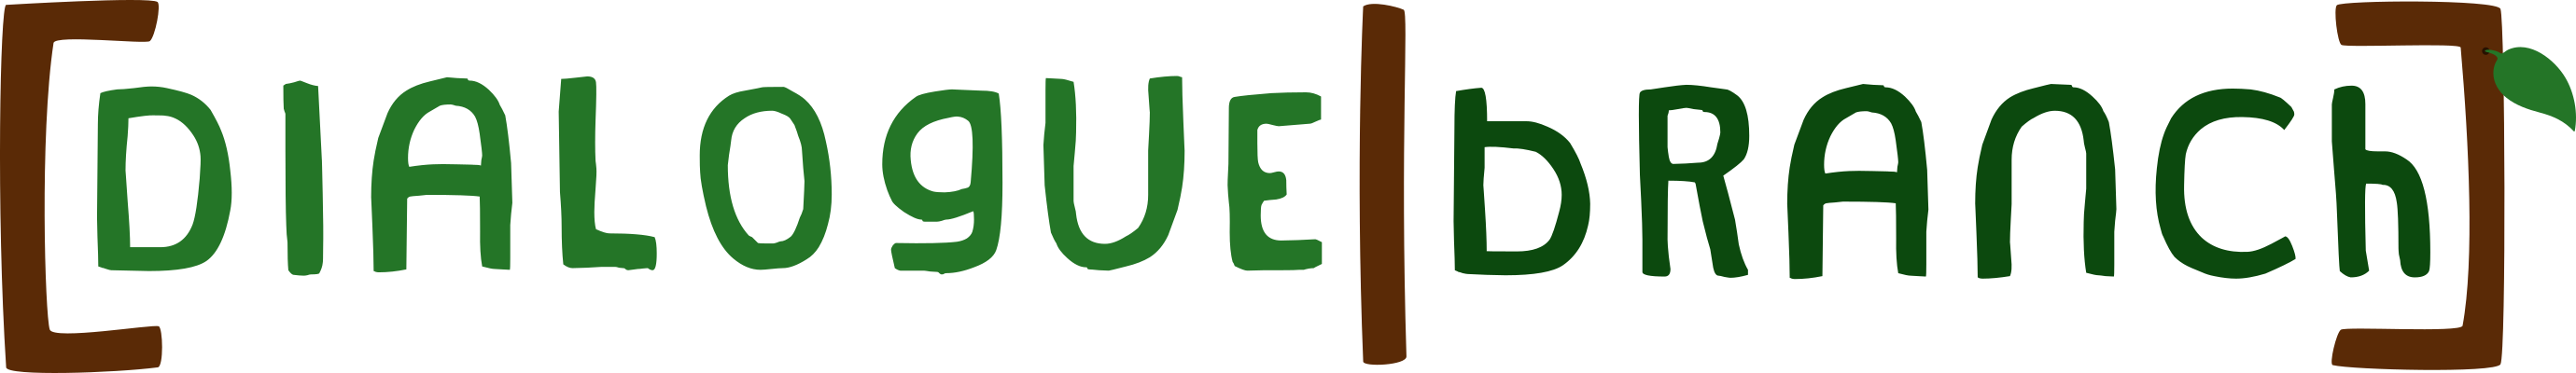 DialogueBranch Logo.